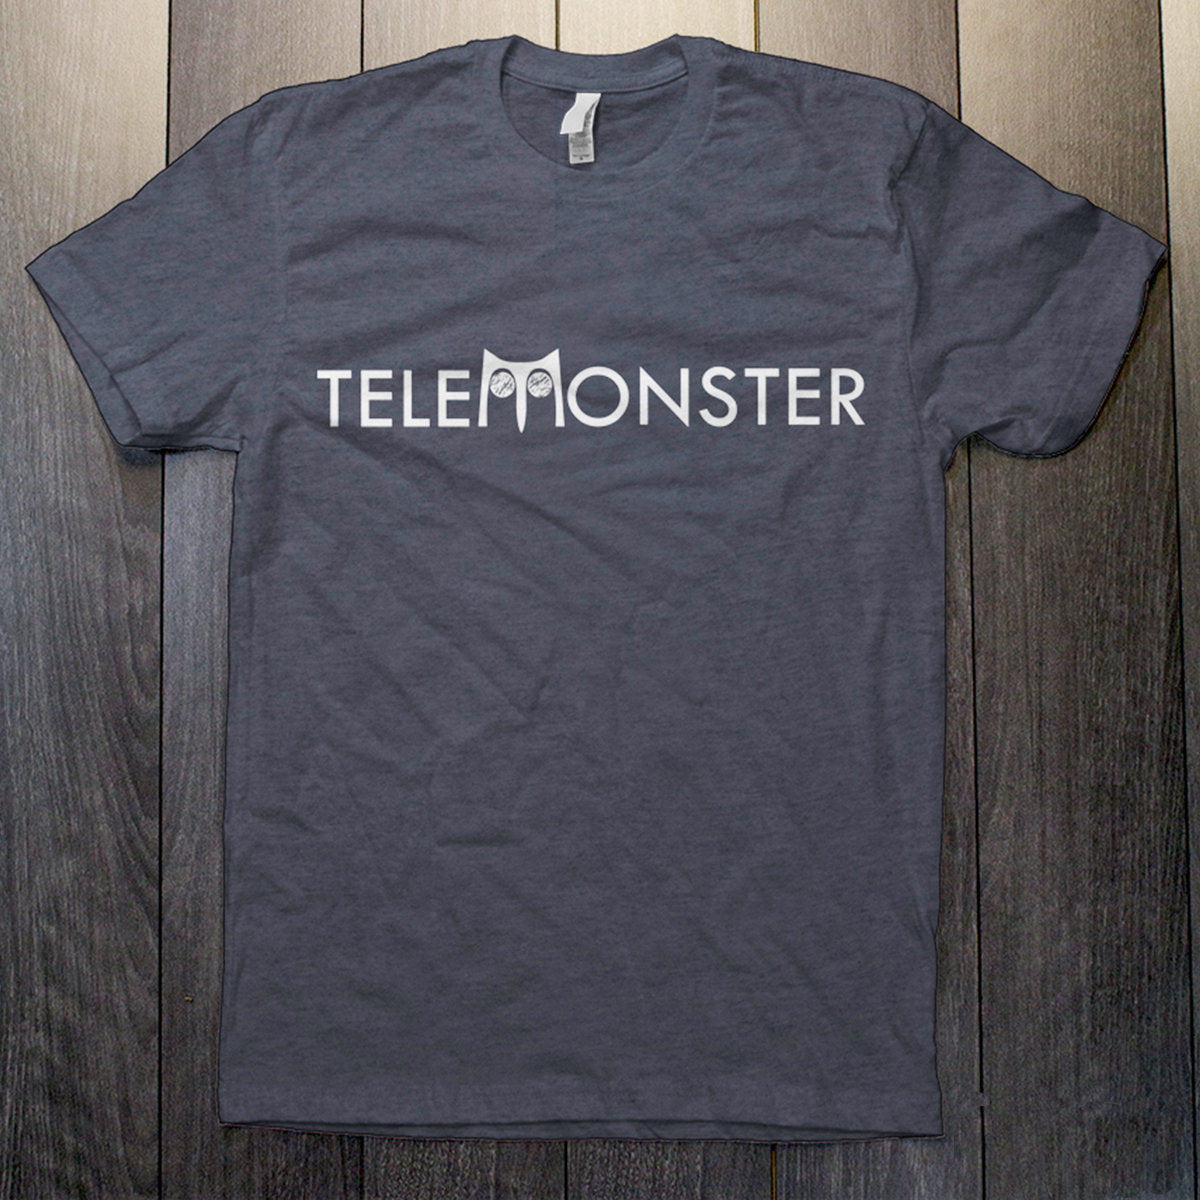 Telemonster - Navy Heather Telemonster T-Shirt